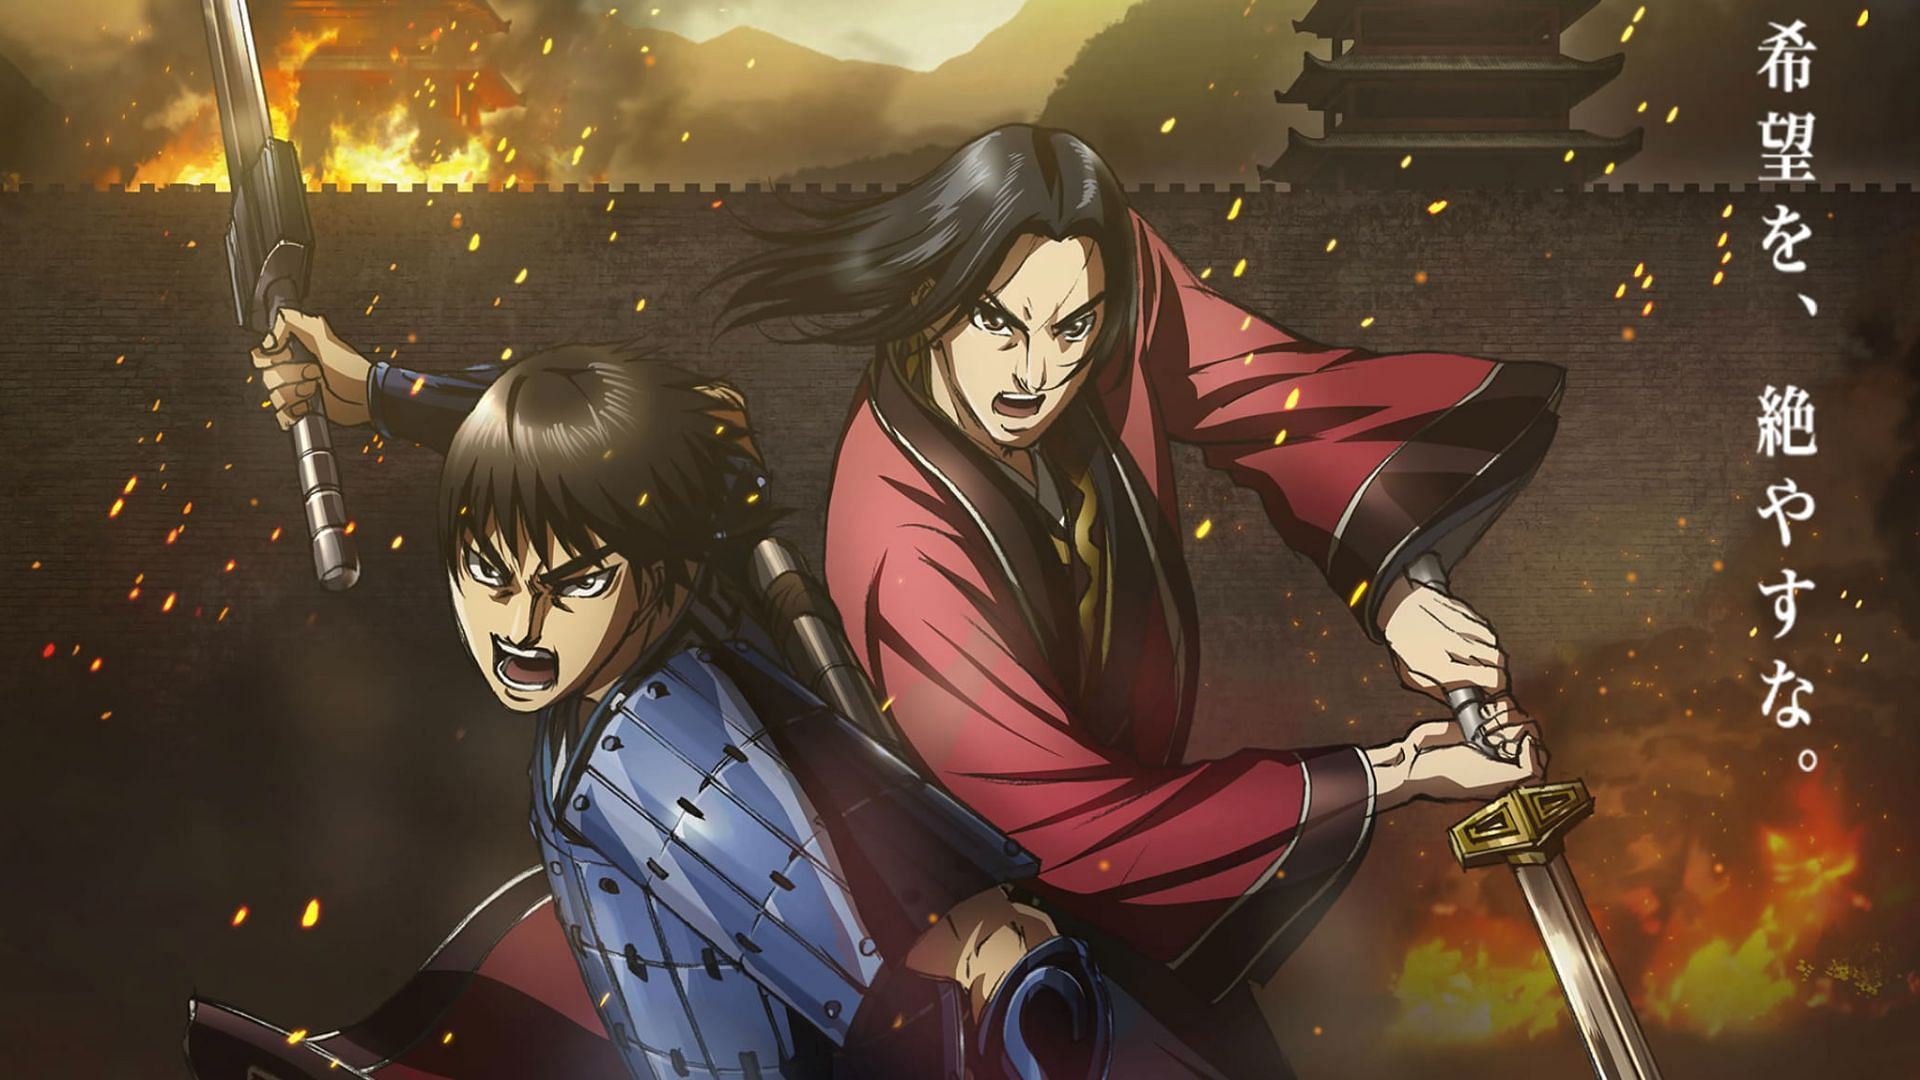 Kingdom anime cover (Image via Sportskeeda))